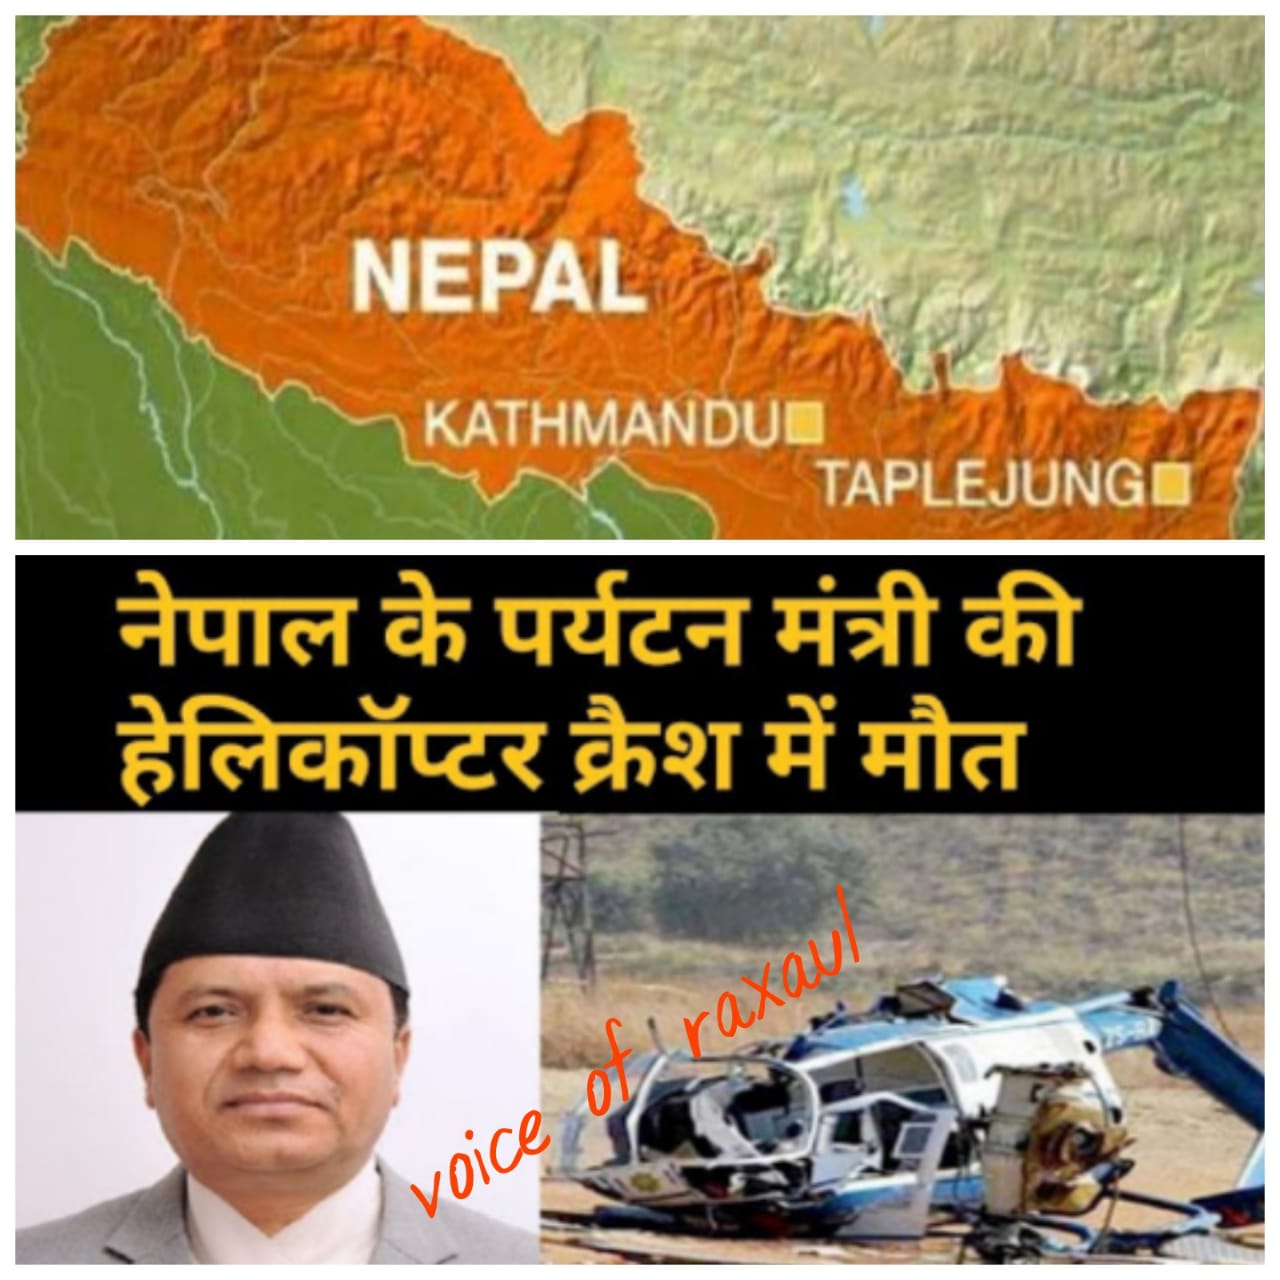 नेपाल के पर्यटन मंत्री रबिन्द्र अधिकारी समेत छह लोगों की हेलीकॉप्टर दुर्घटना में मौत!